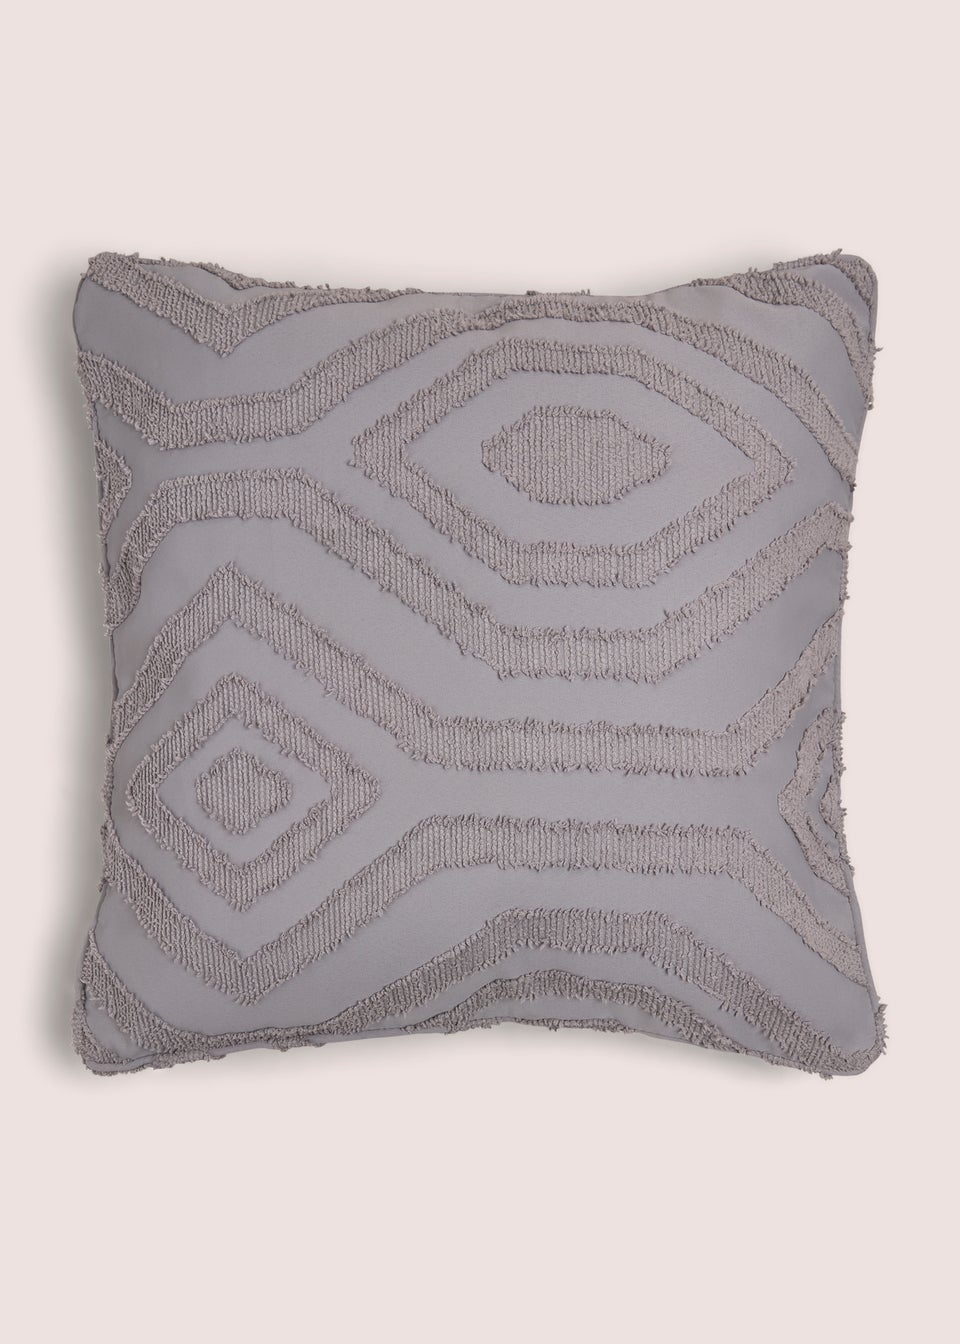 Grey Geo Tufted Cushion (43cm x 43cm)